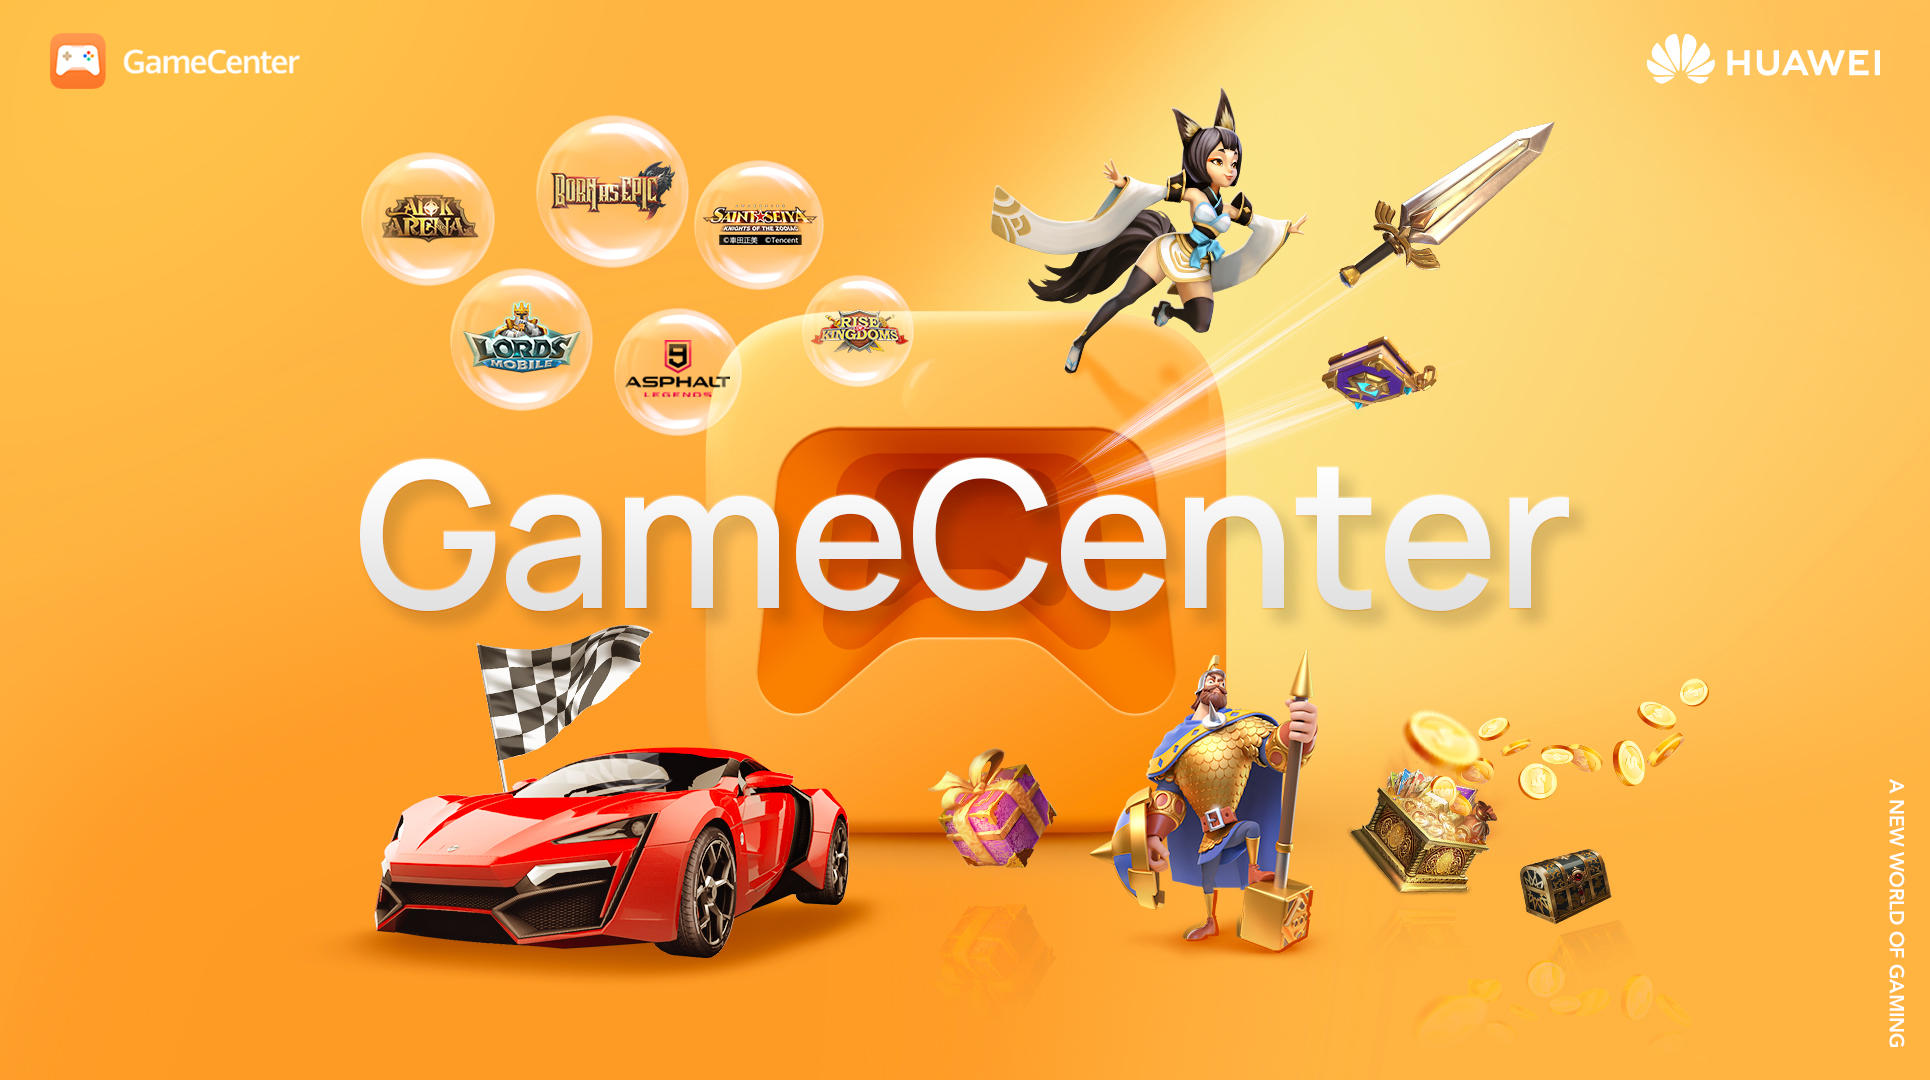 “หัวเว่ย” ประกาศเปิดตัวแพลตฟอร์มใหม่ HUAWEI GameCenter ทั่วโลก เอาใจคอเกมมือถือ